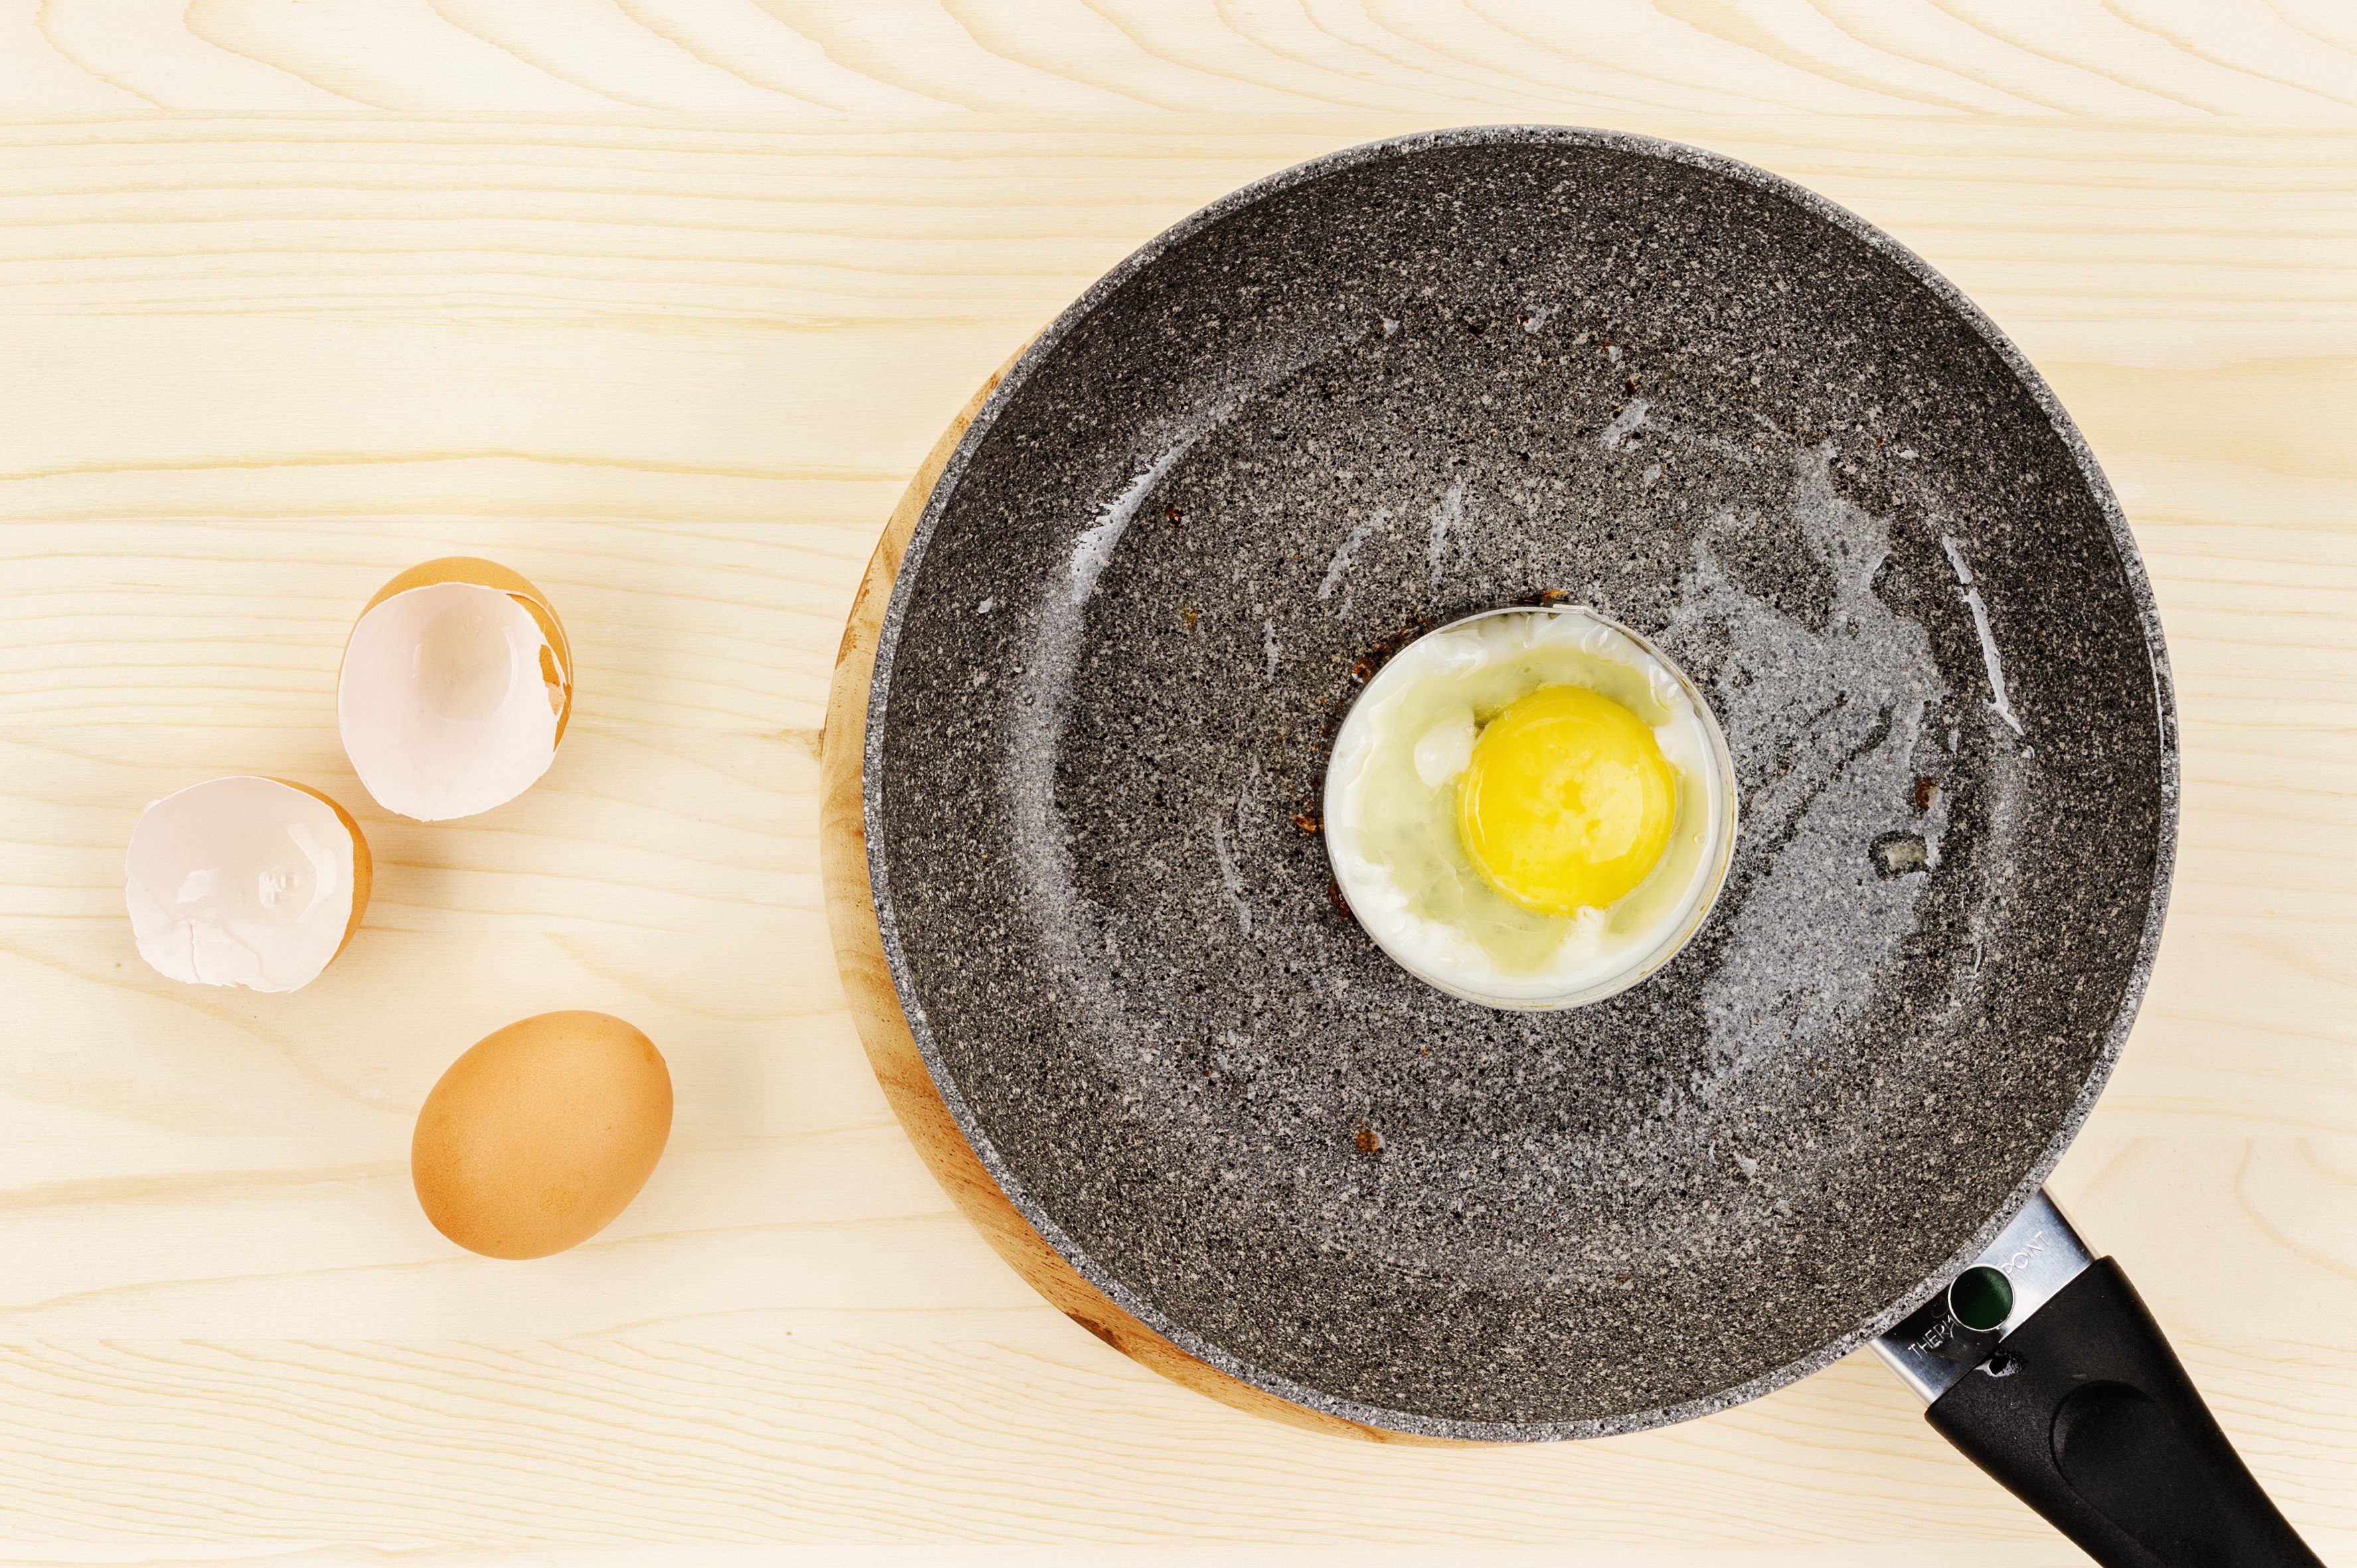 Жареные яйца. Форма для яичницы круглая. Жареное яйцо в форме. Чугунная сковорода с яичницей и колбасой вид сверху. Теплые яички